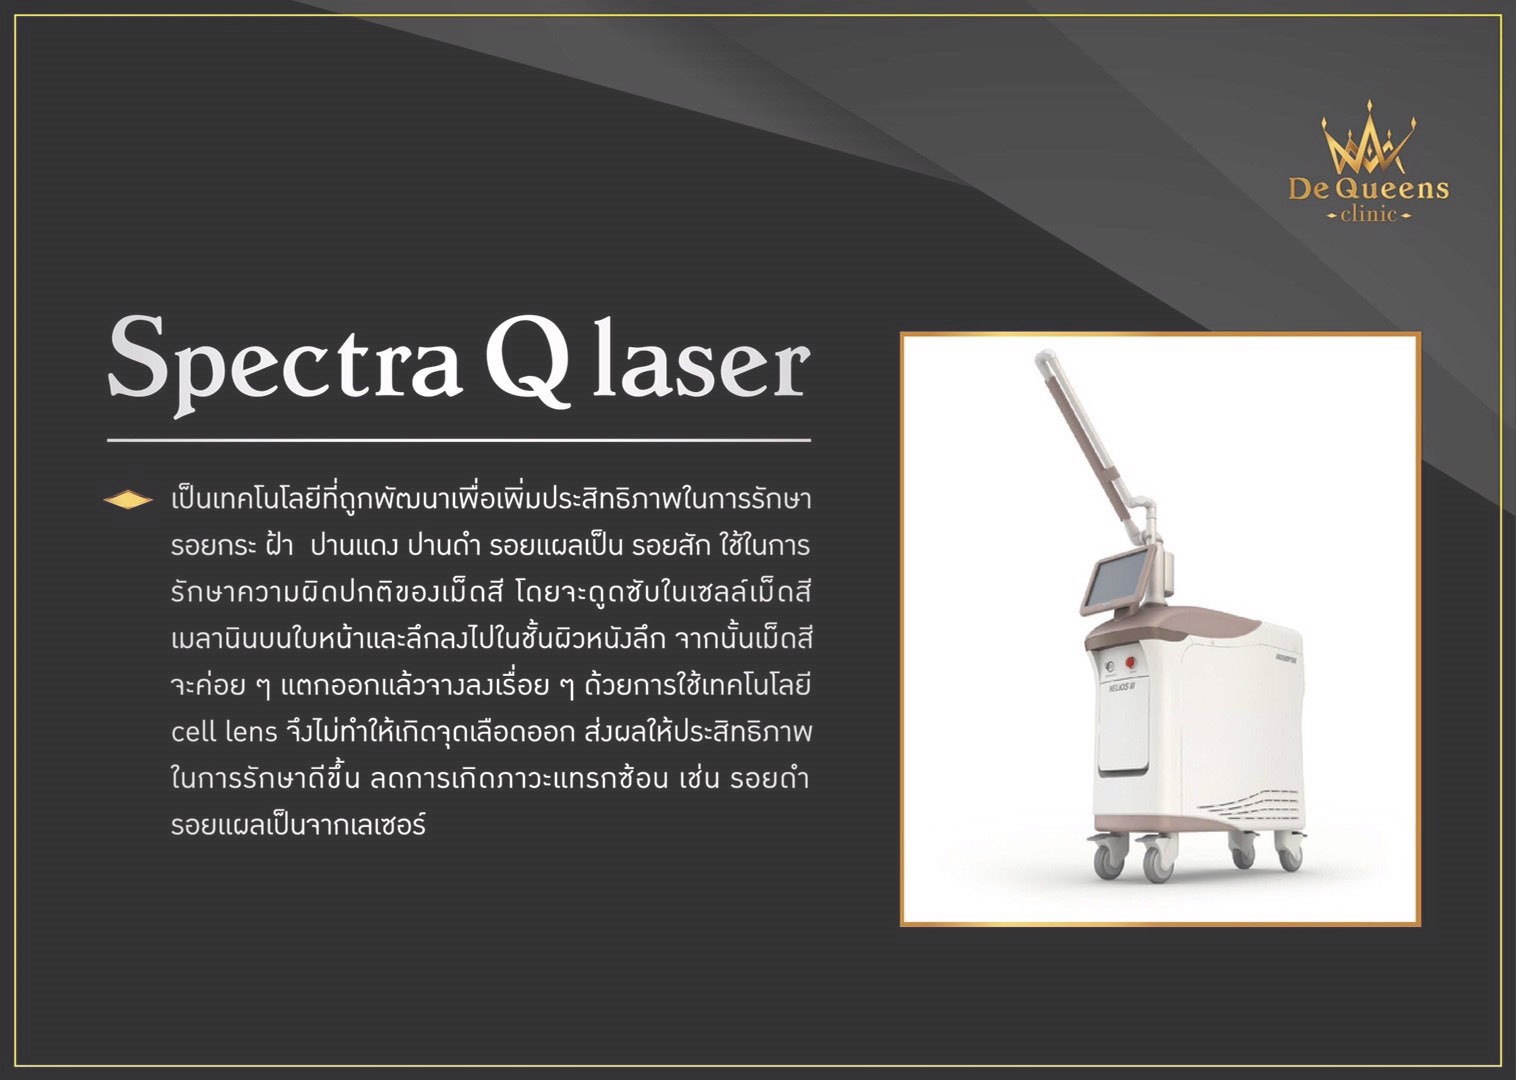 Spectra Q laser